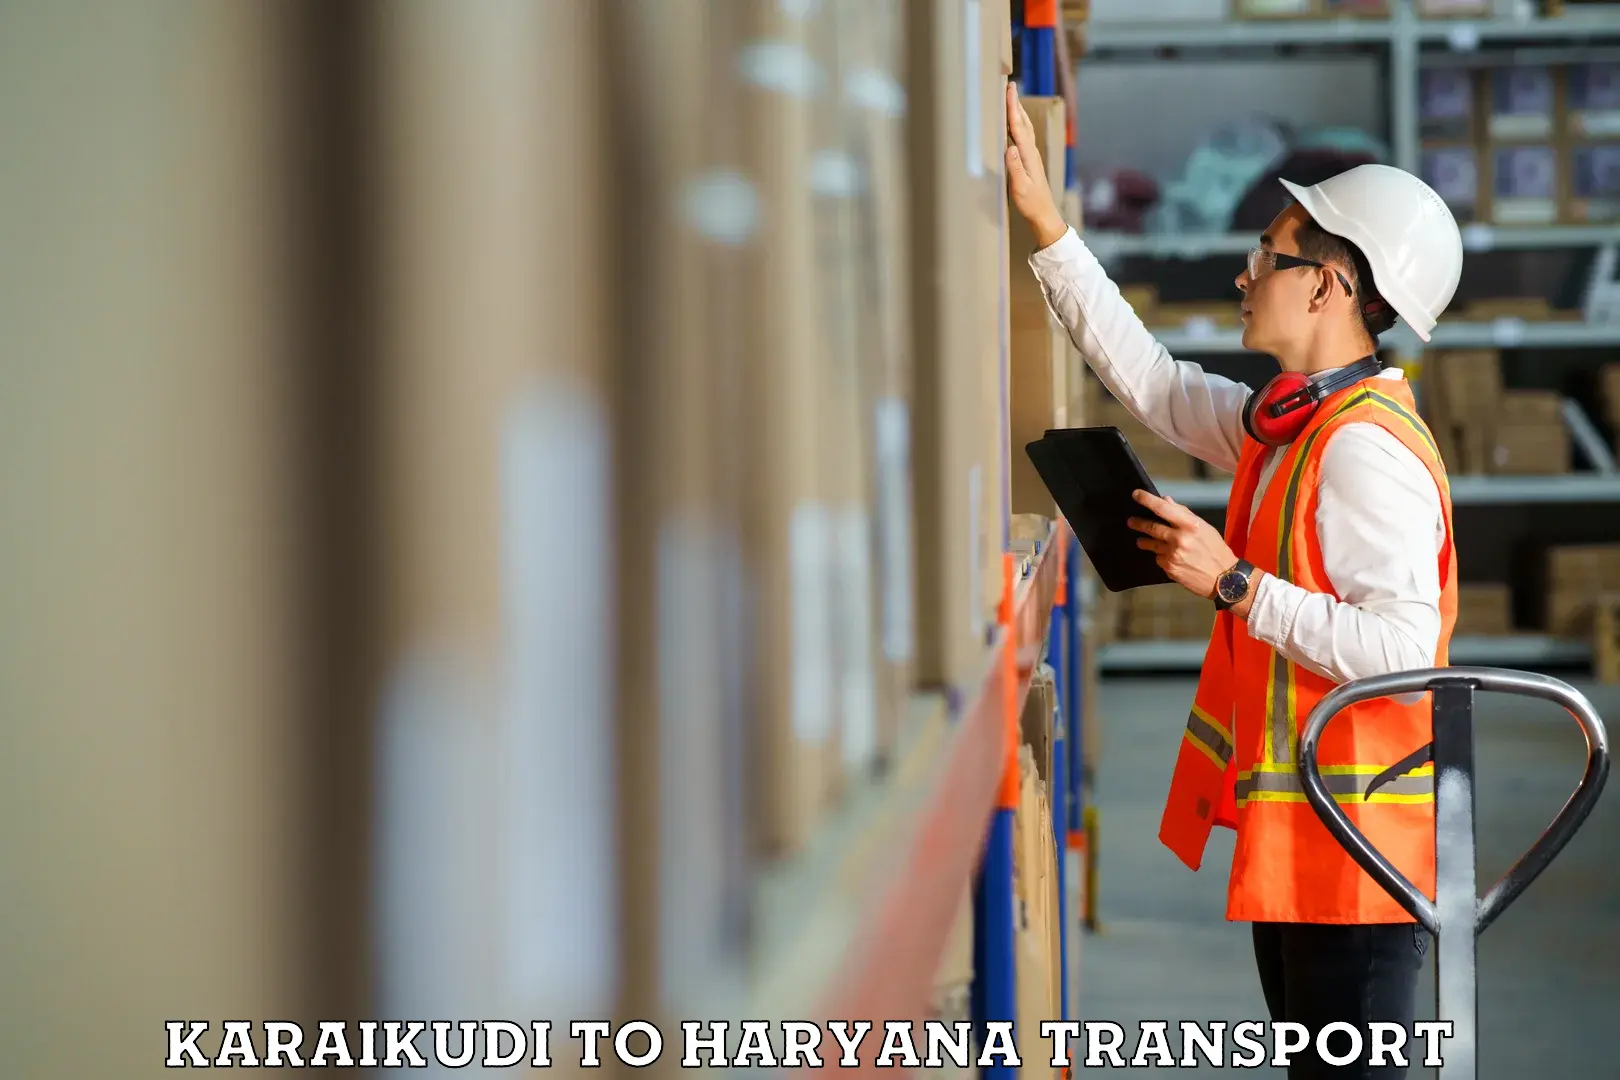 Lorry transport service Karaikudi to Dharuhera